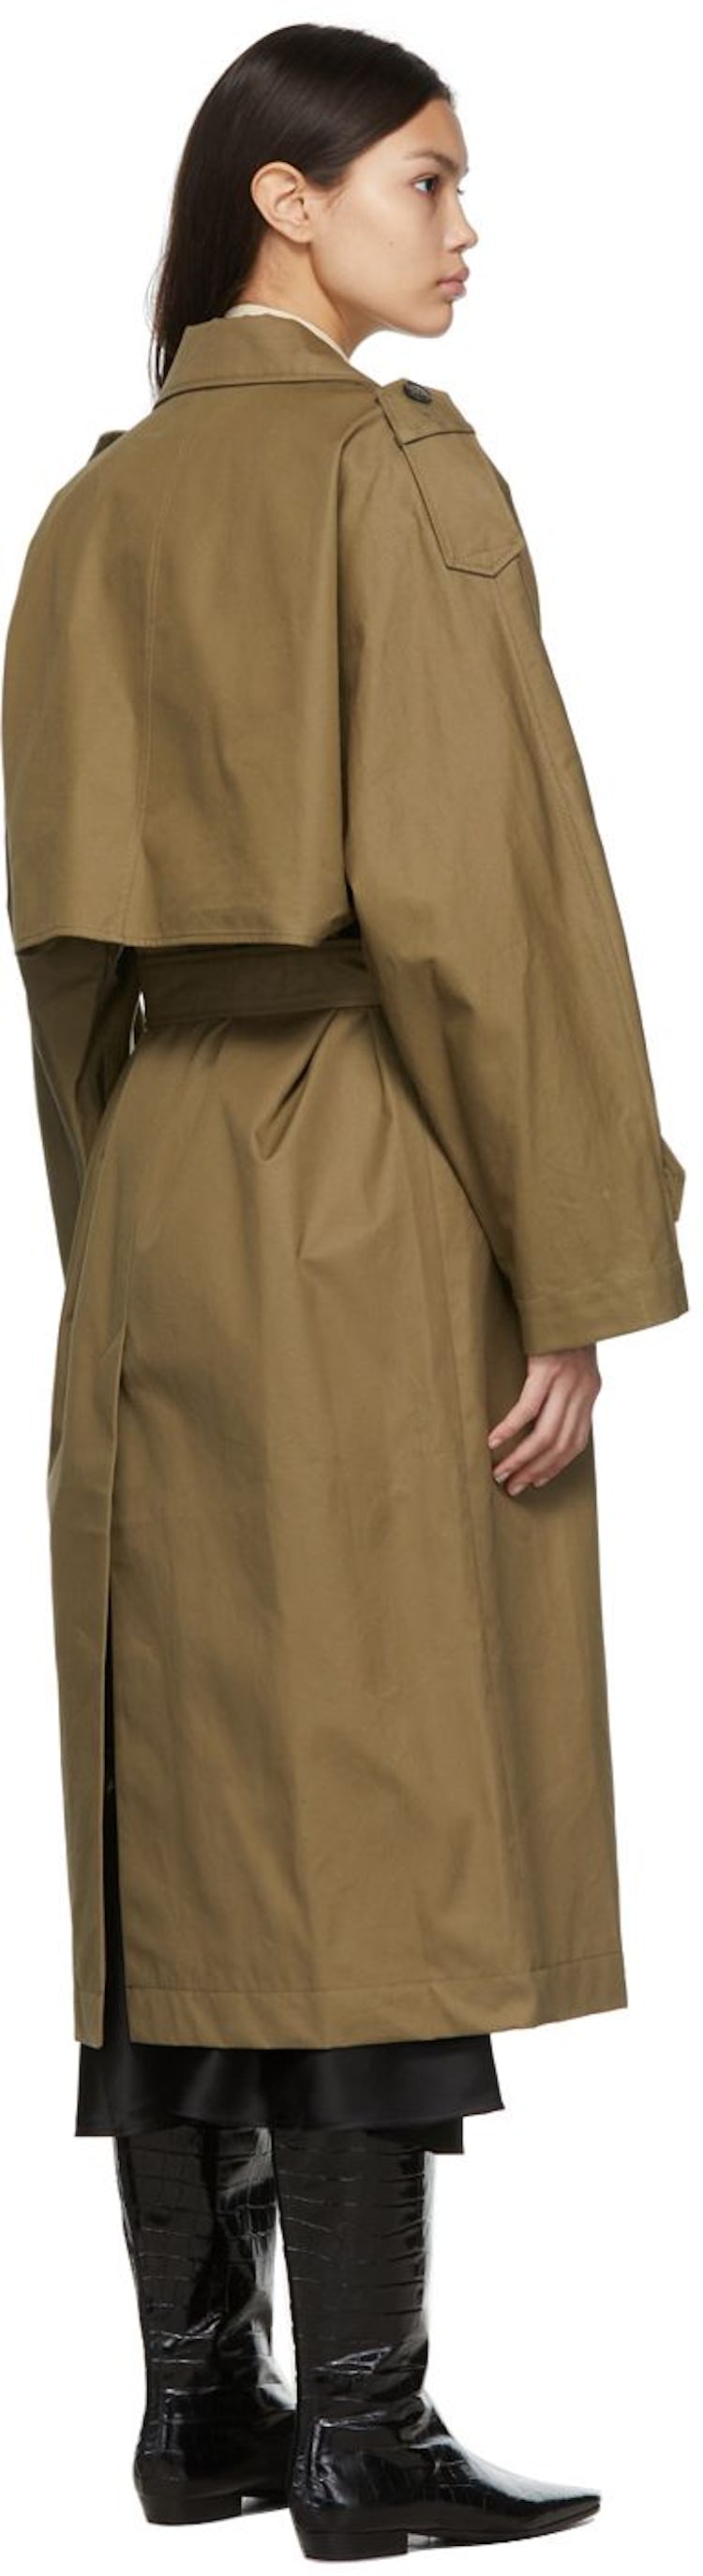 Khaki Trench Coat: additional image